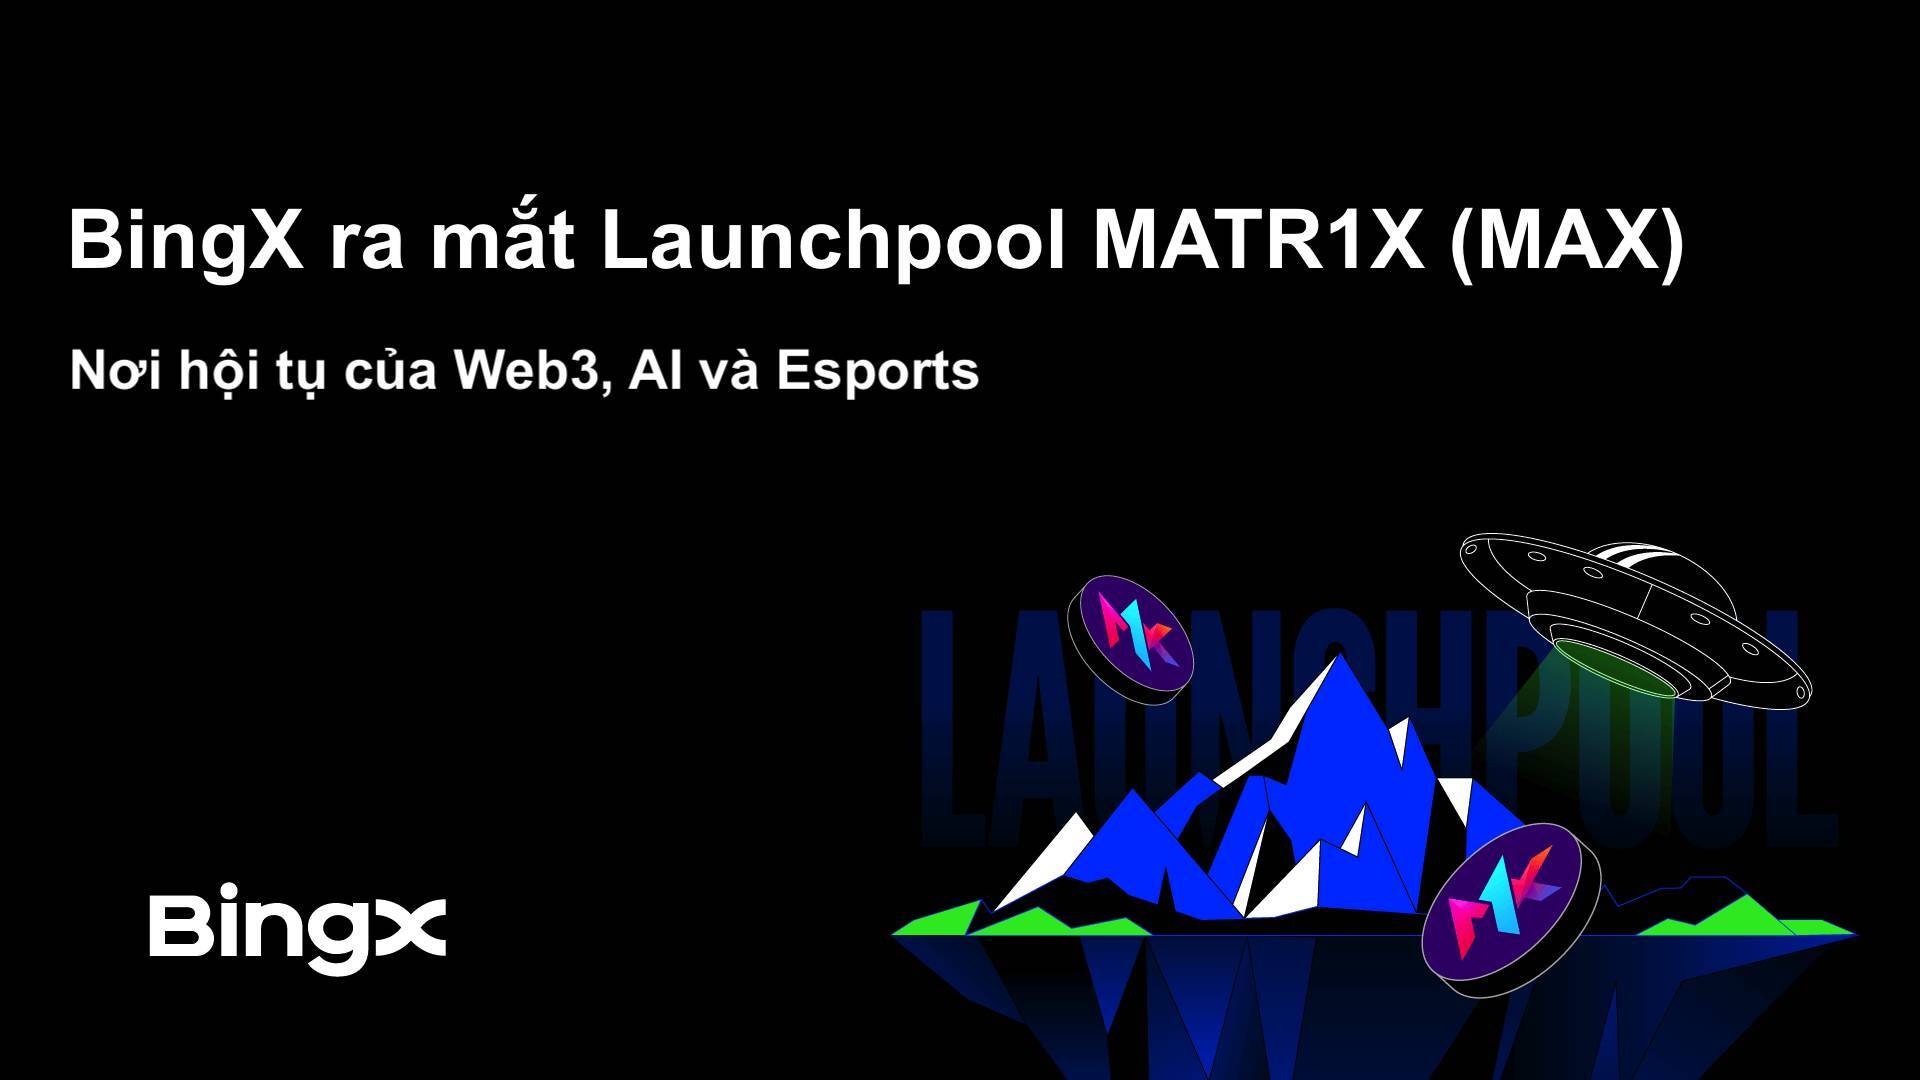 Bingx Ra Mắt Launchpool Matr1x max Nơi Hội Tụ Của Web3 Ai Và Esports